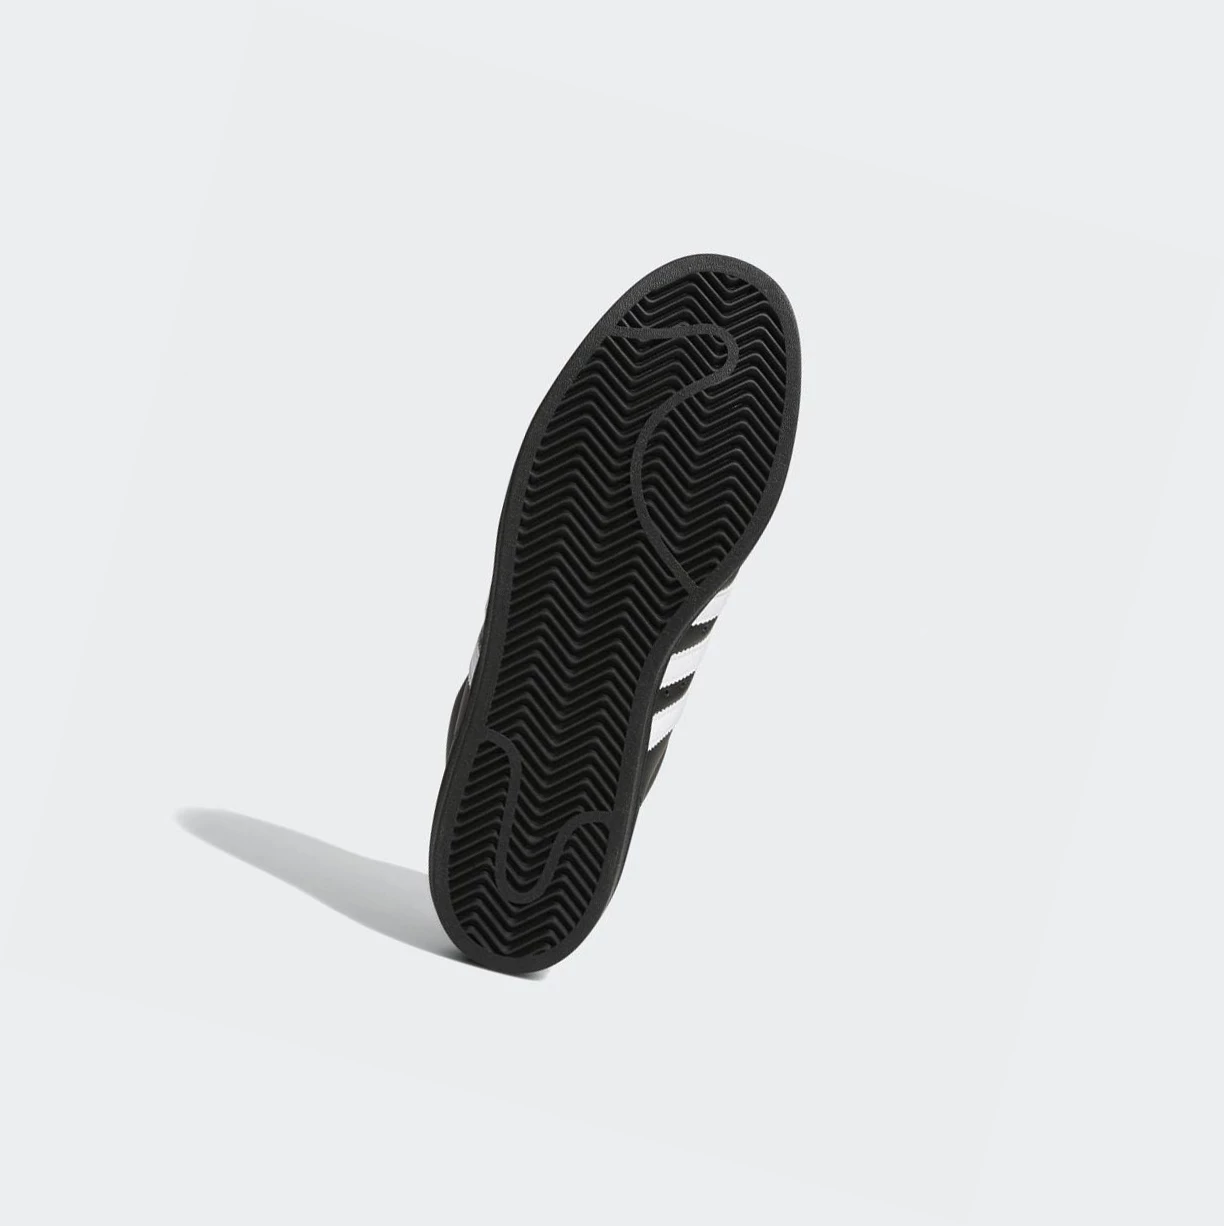 Originálne Topánky Adidas Pro Model Damske Čierne | 051SKCKJYBD